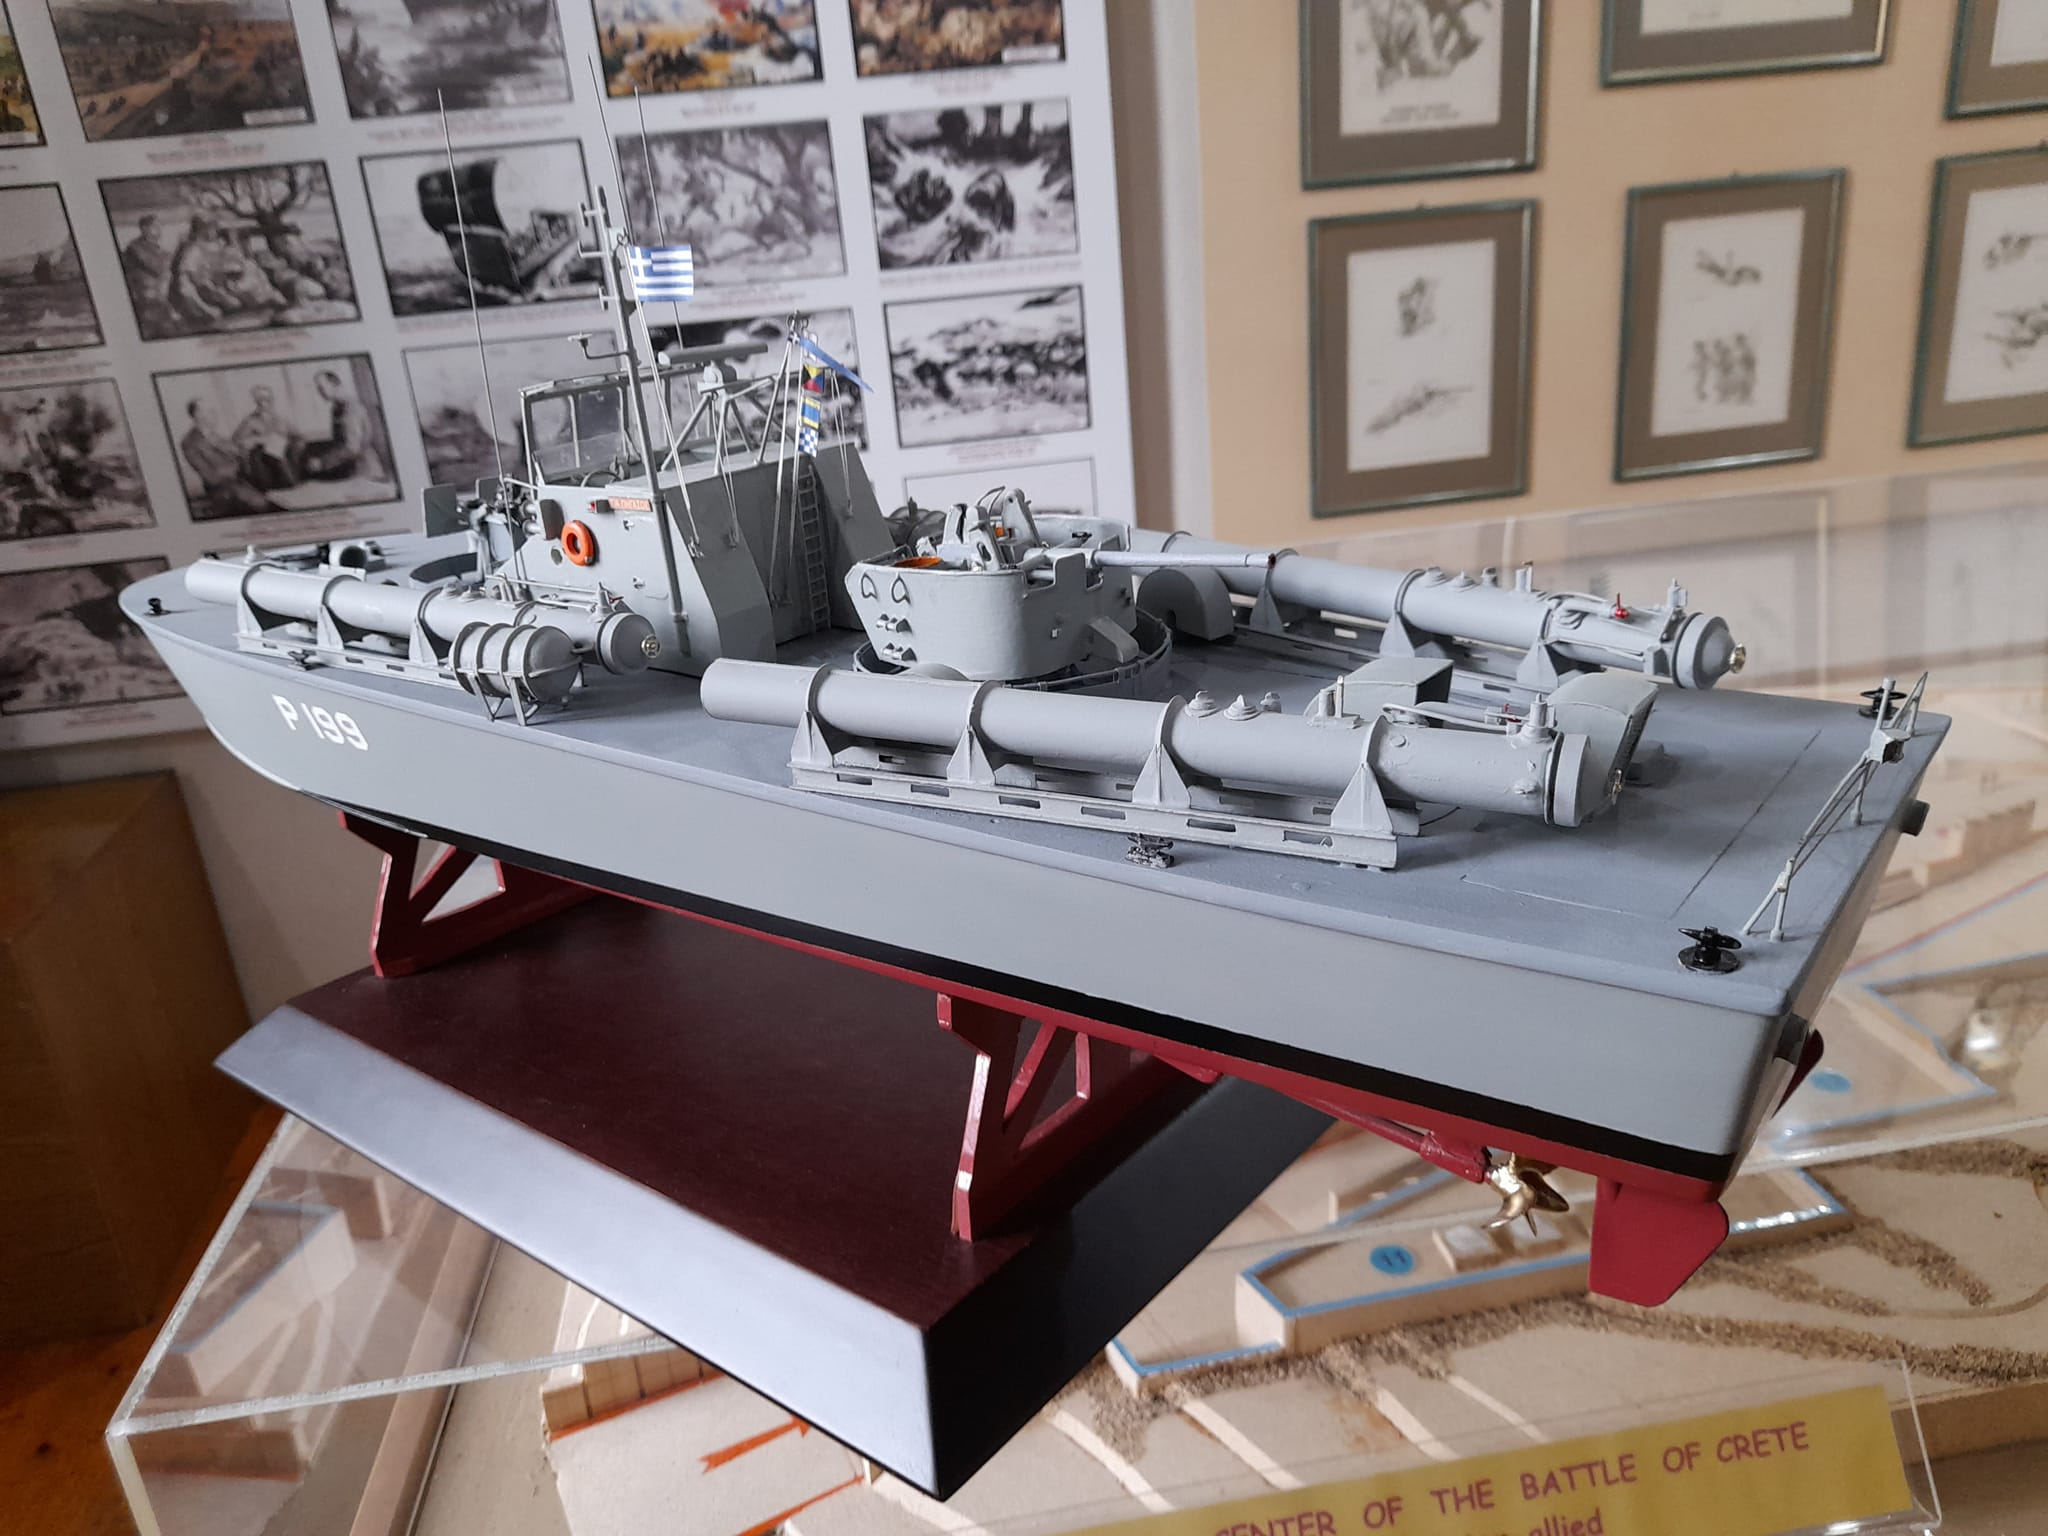 Χανιά: Μέσα στο εργαστήριο που φτιάχνει πιστά αντίγραφα πολεμικών πλοίων για το ναυτικό μουσείο